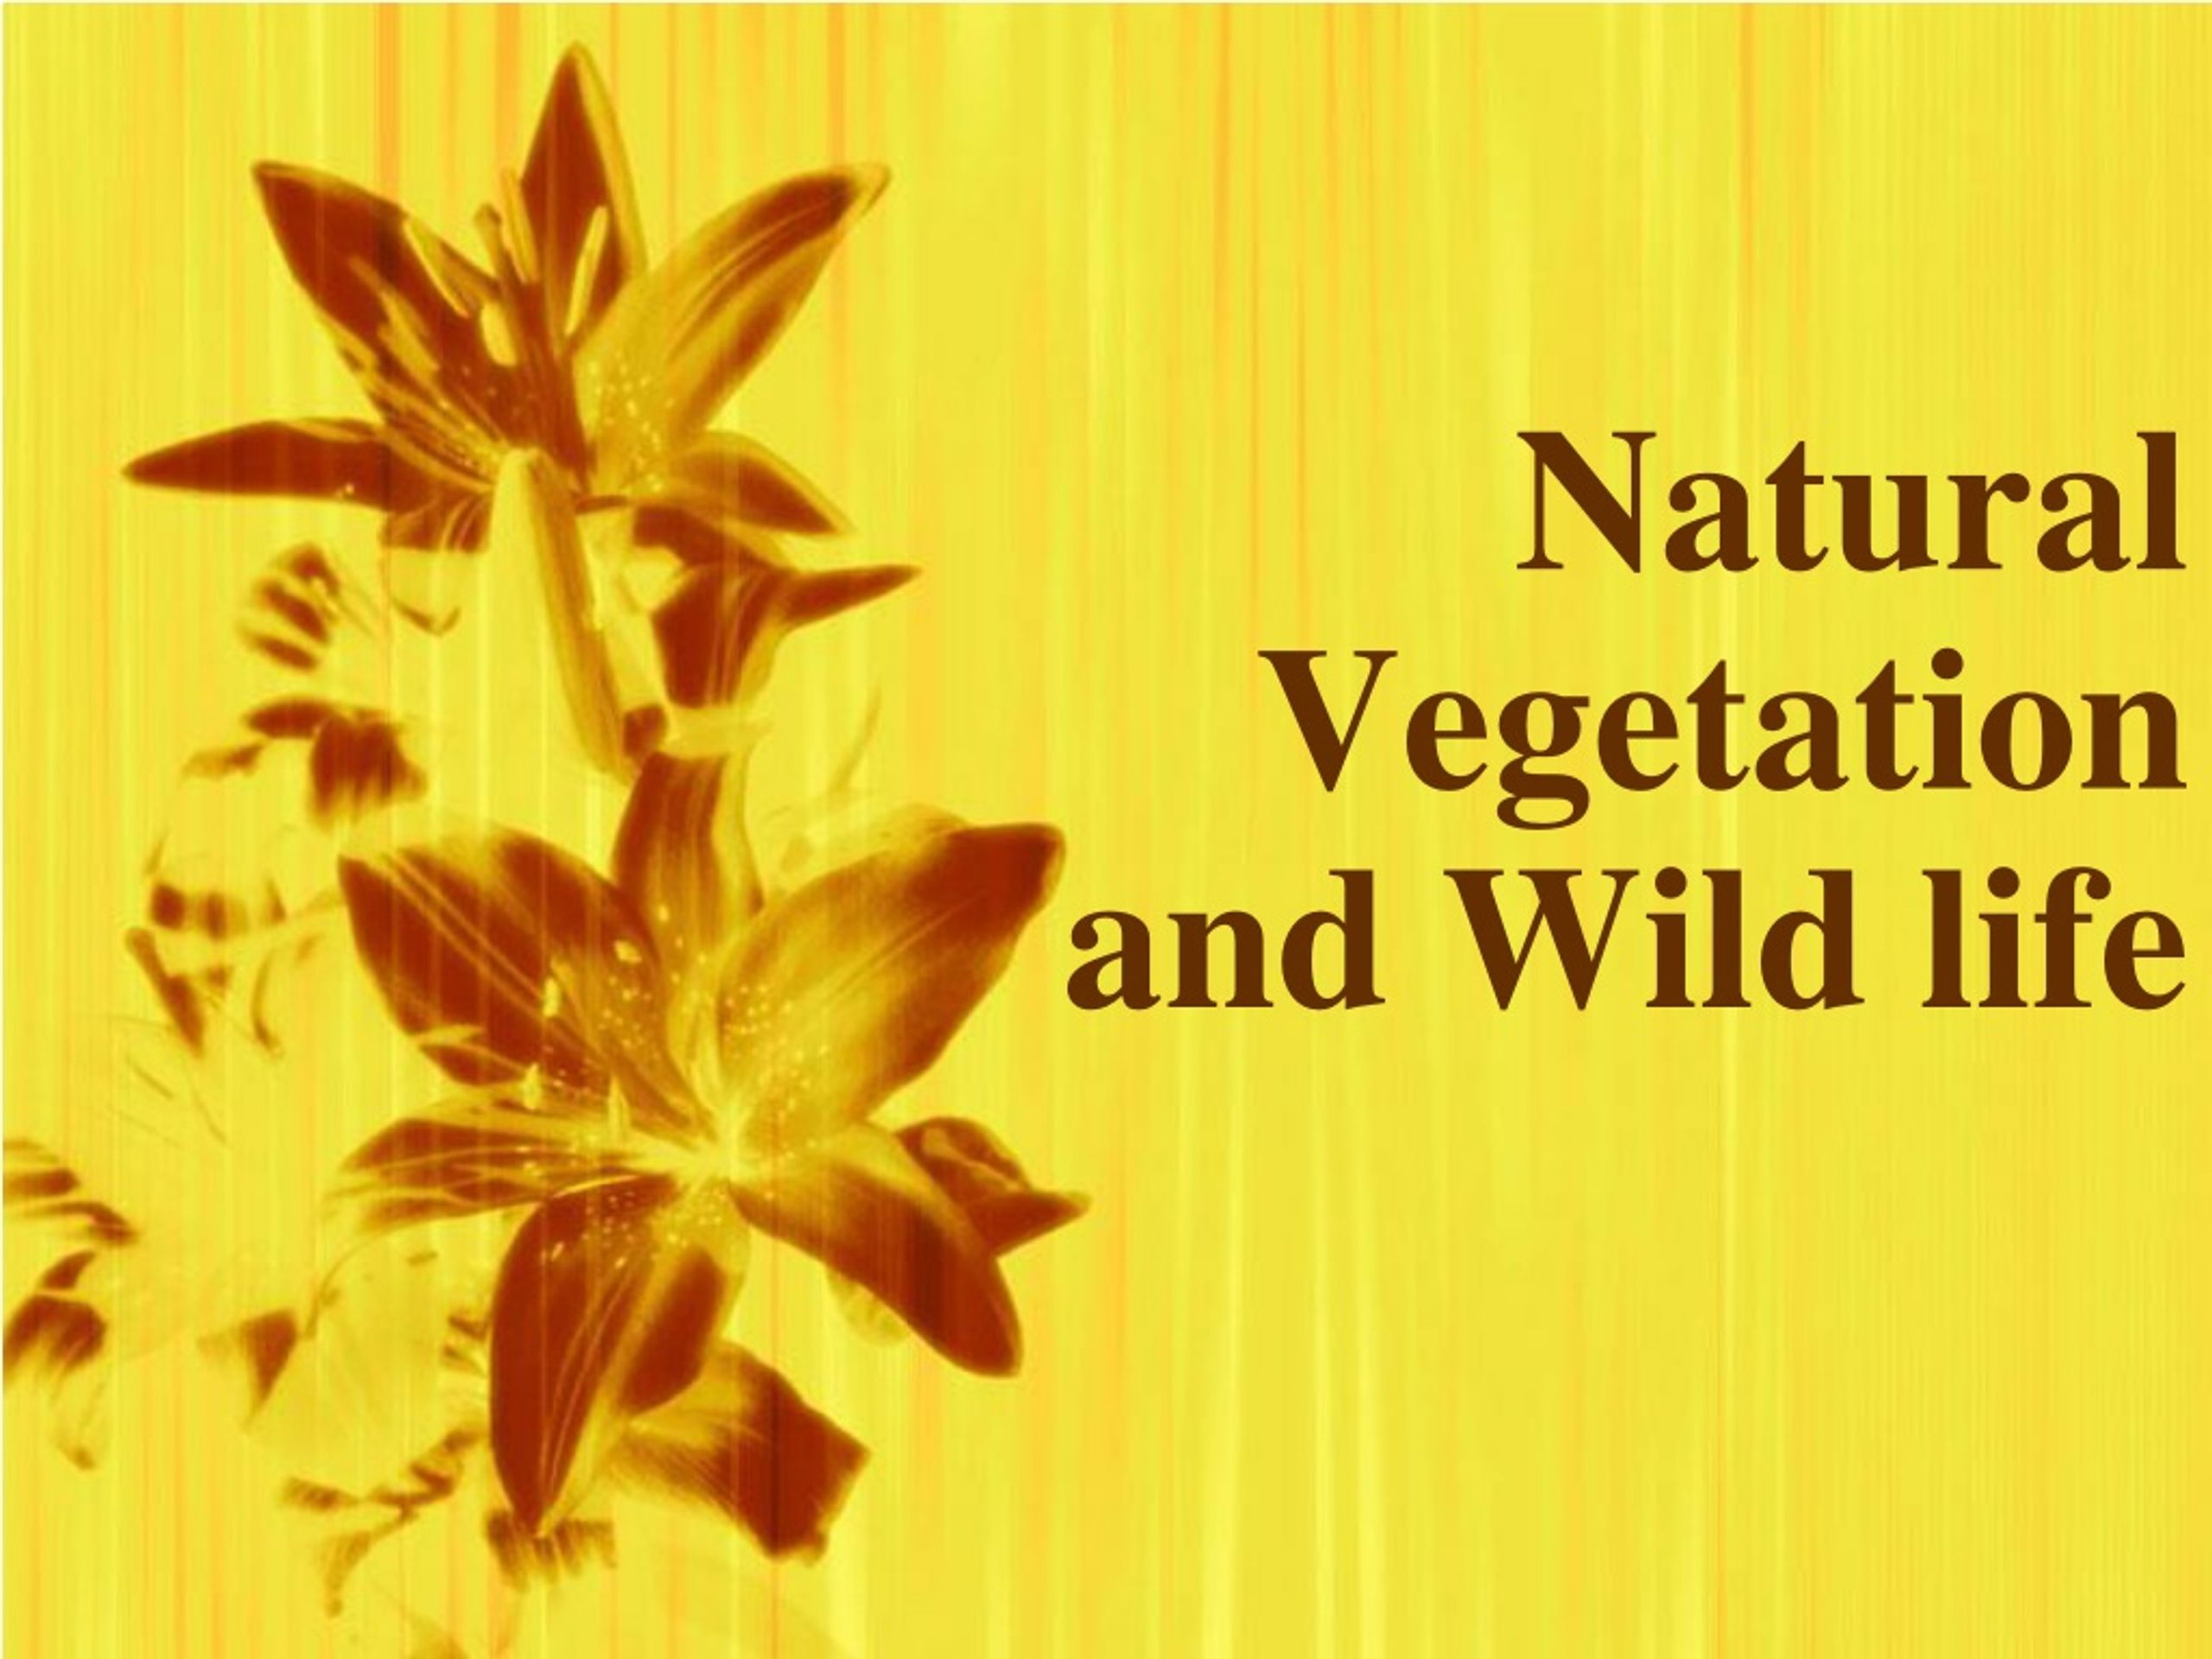 natural vegetation and wildlife ppt presentation free download